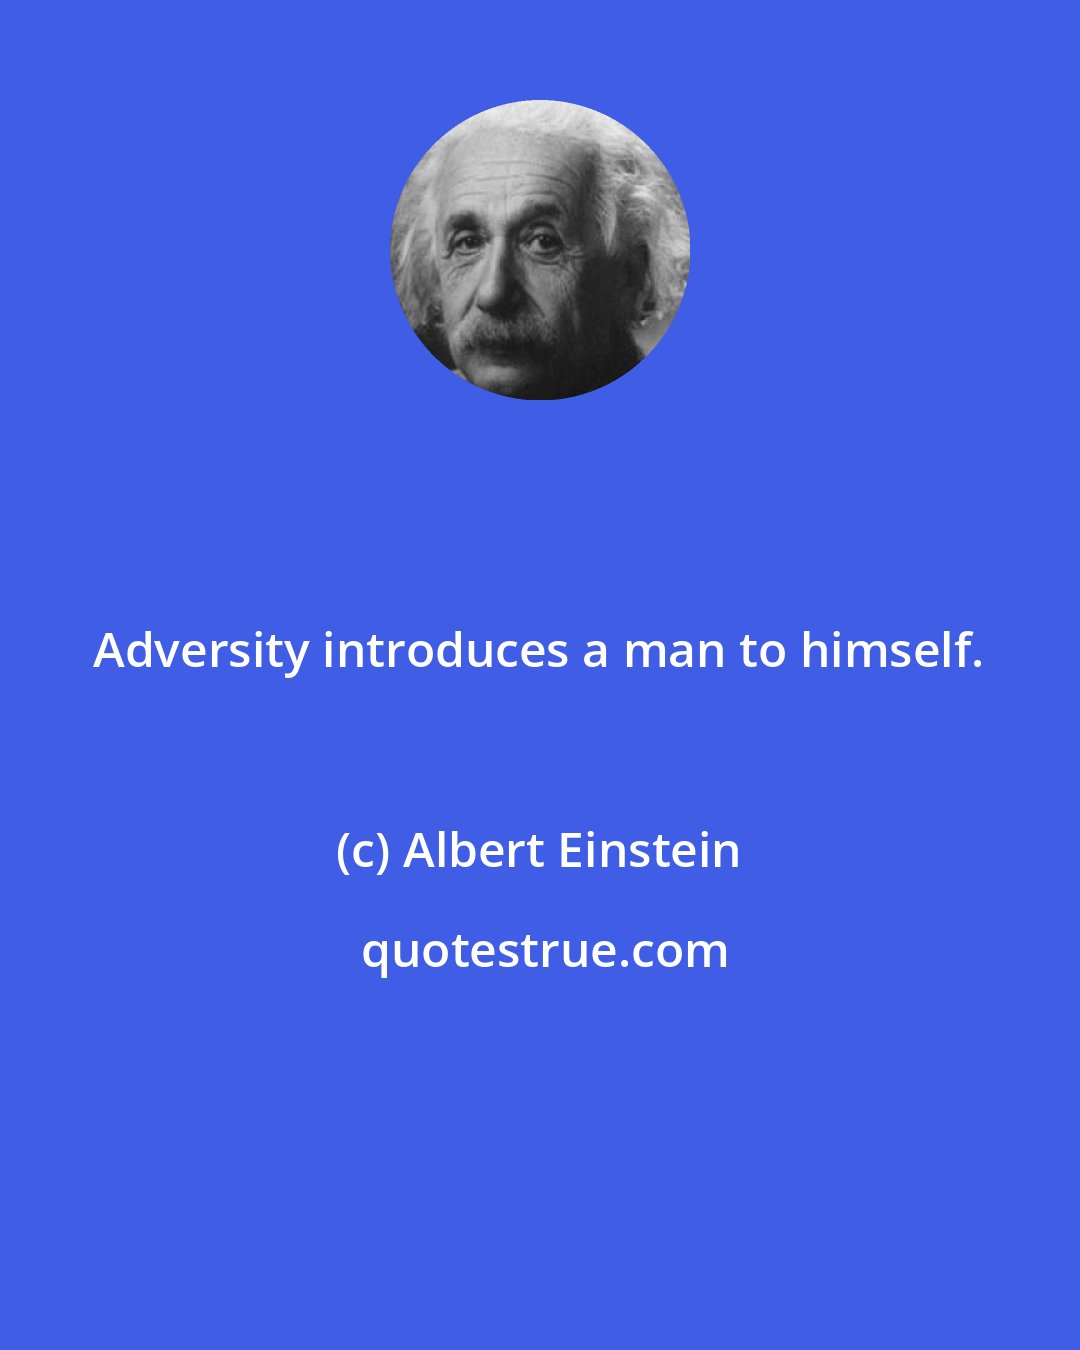 Albert Einstein: Adversity introduces a man to himself.